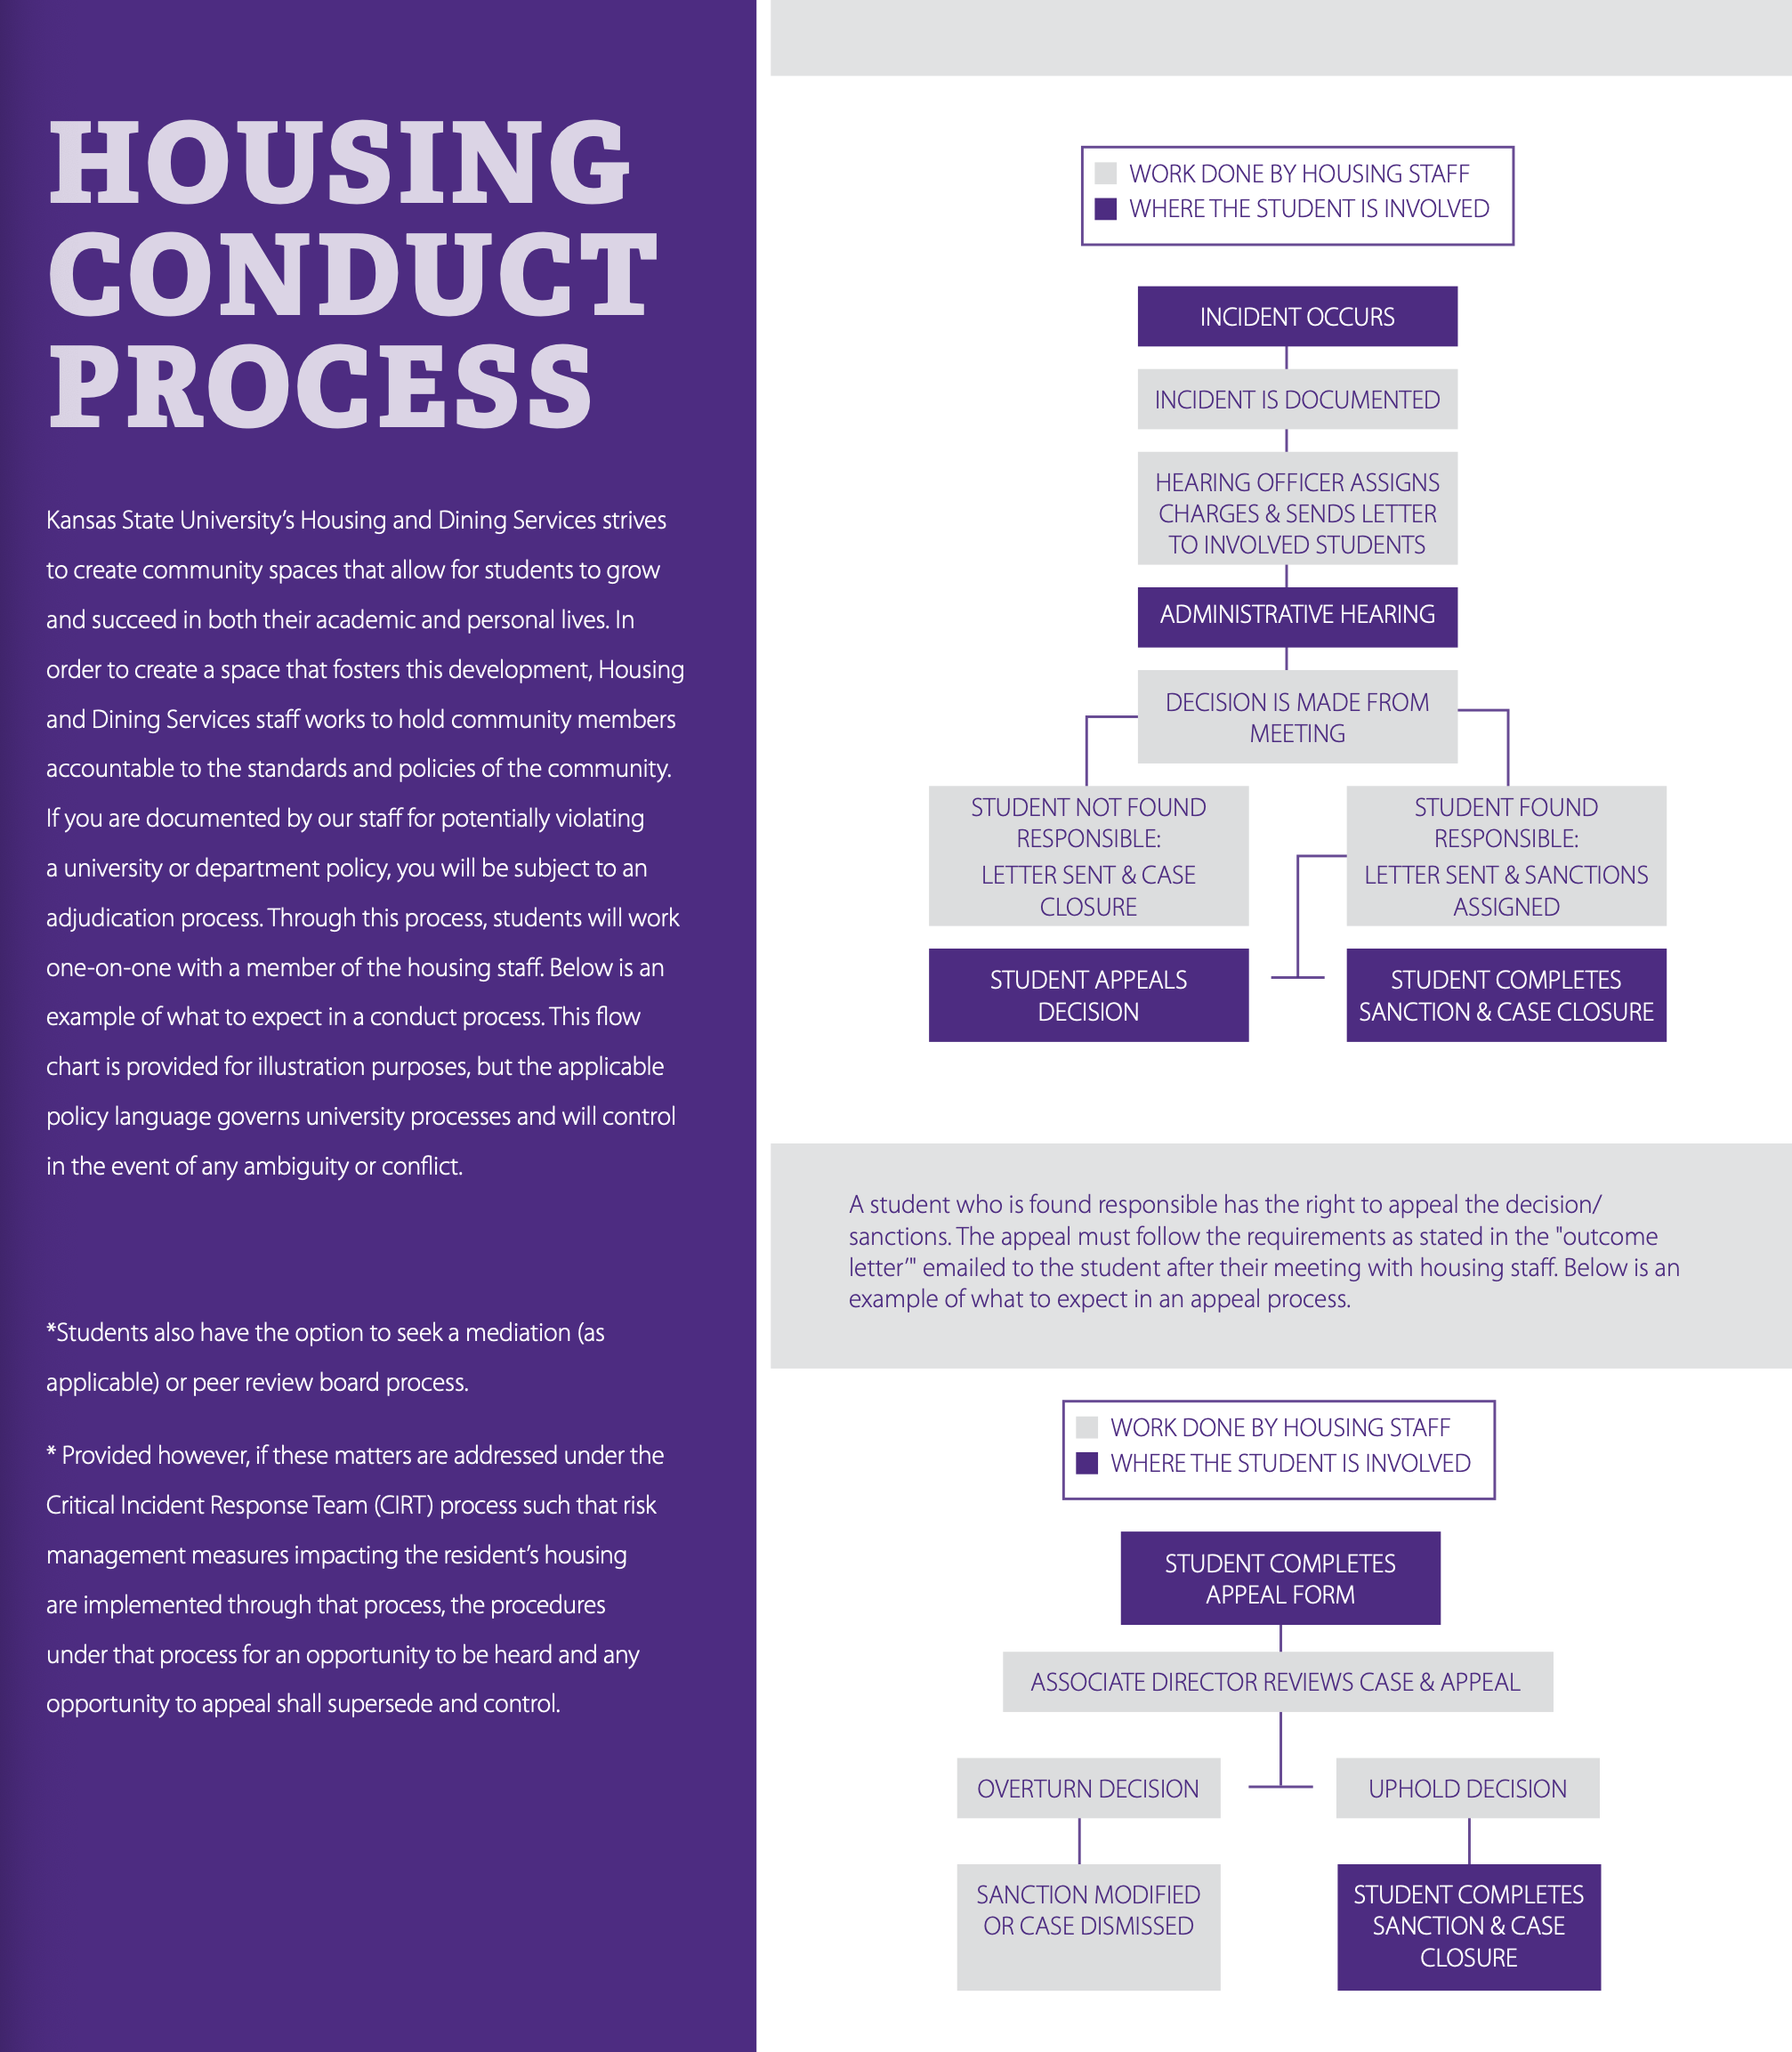 Housing Conduct Process description.